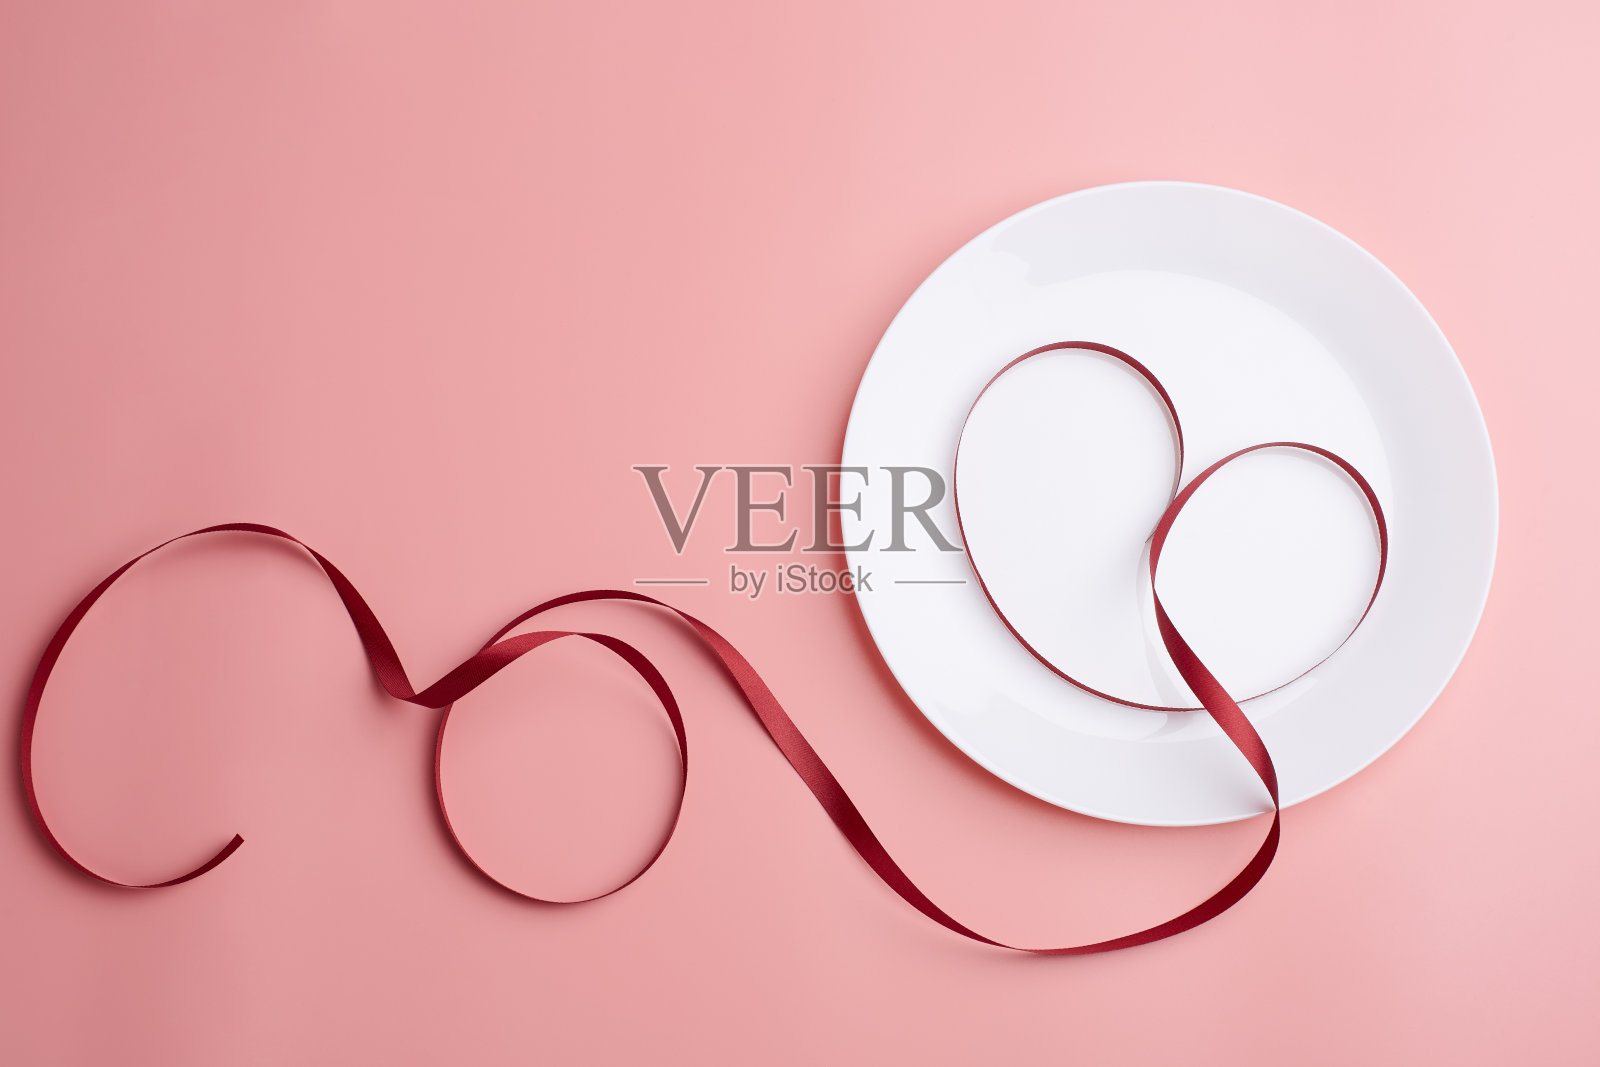 甜爱菜单象征红丝带心形状的菜照片摄影图片